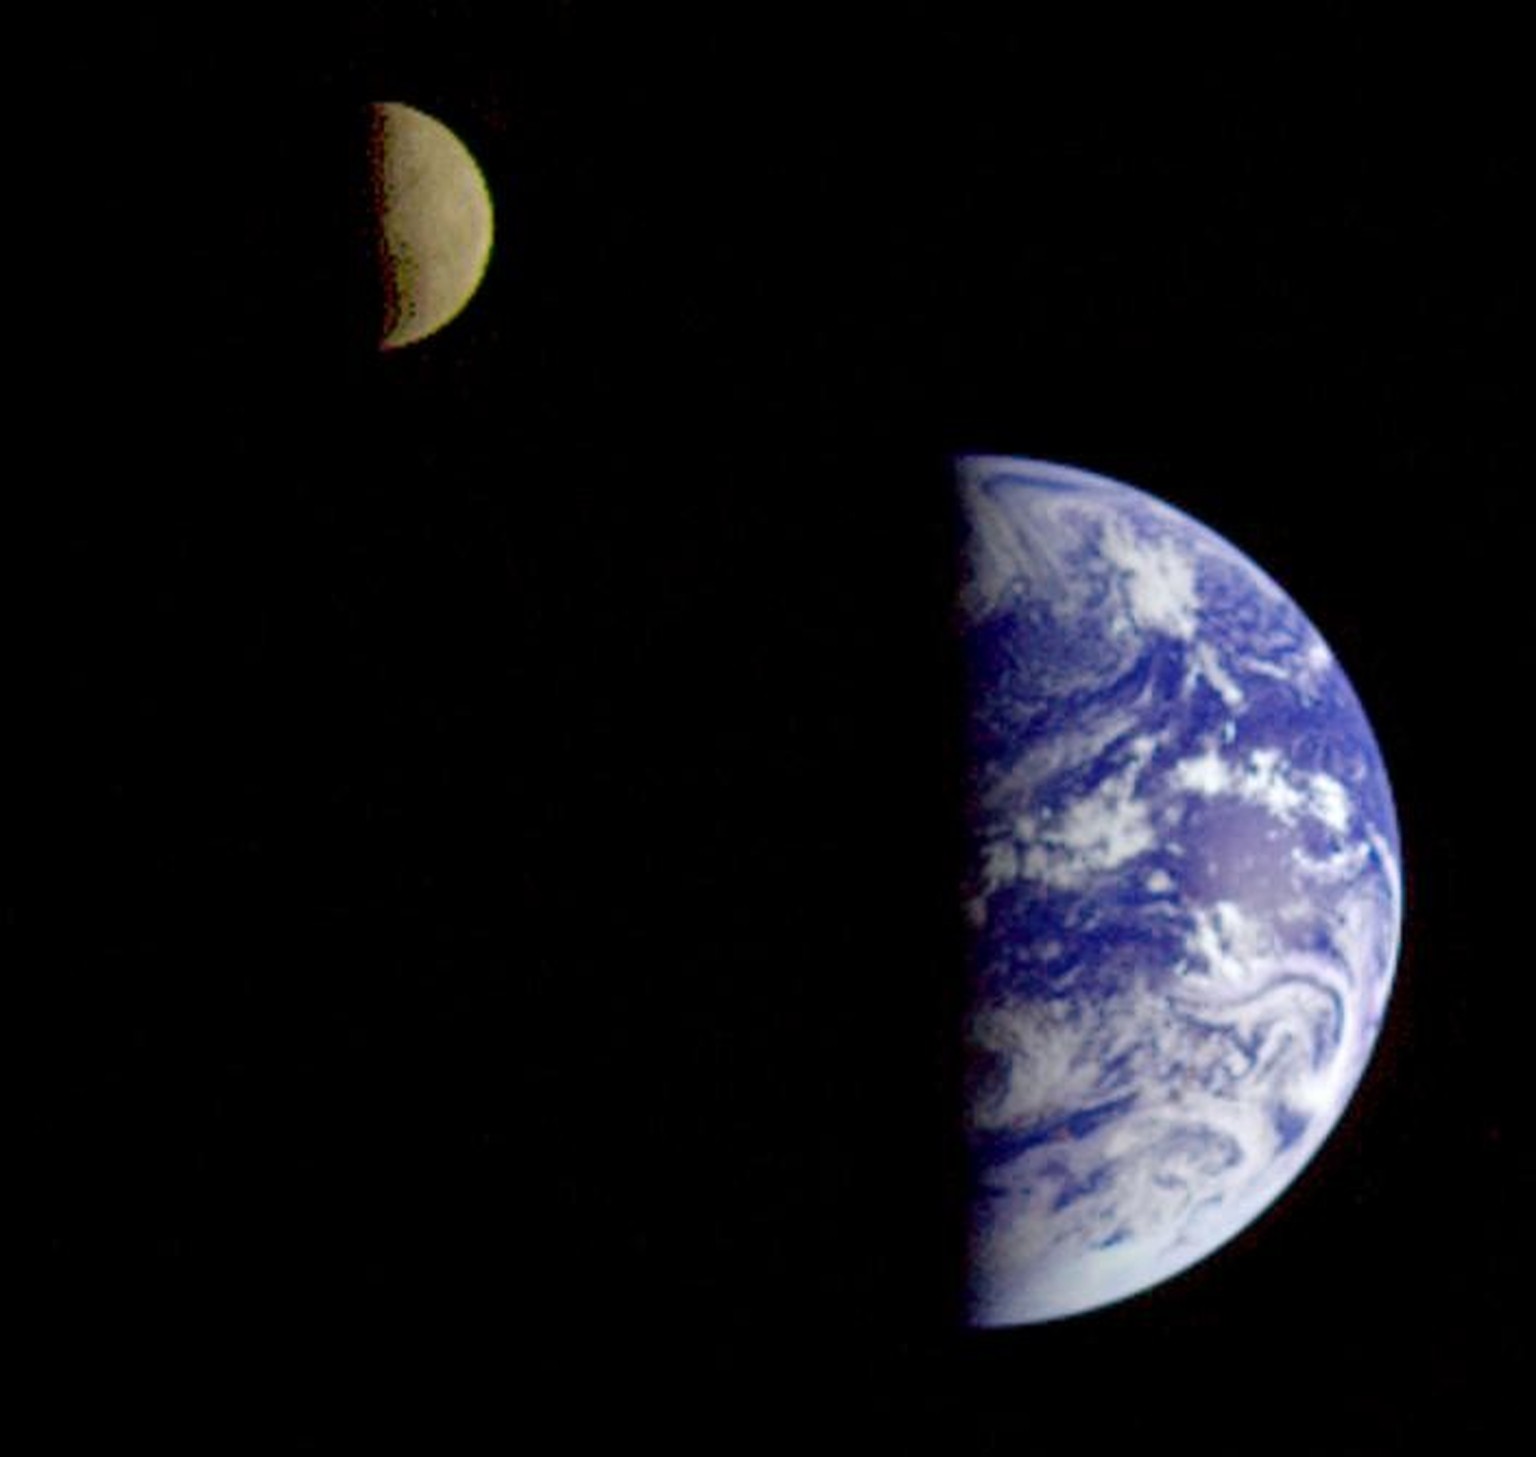 Erde und Mond beide ungefähr zur Dichotomie (halbe Phase bei Phasenwinkel 90°; Bild aufgenommen von der Raumsonde Galileo [NASA])
https://de.wikipedia.org/wiki/Tag-Nacht-Grenze#/media/Datei:Earth-Moon ...